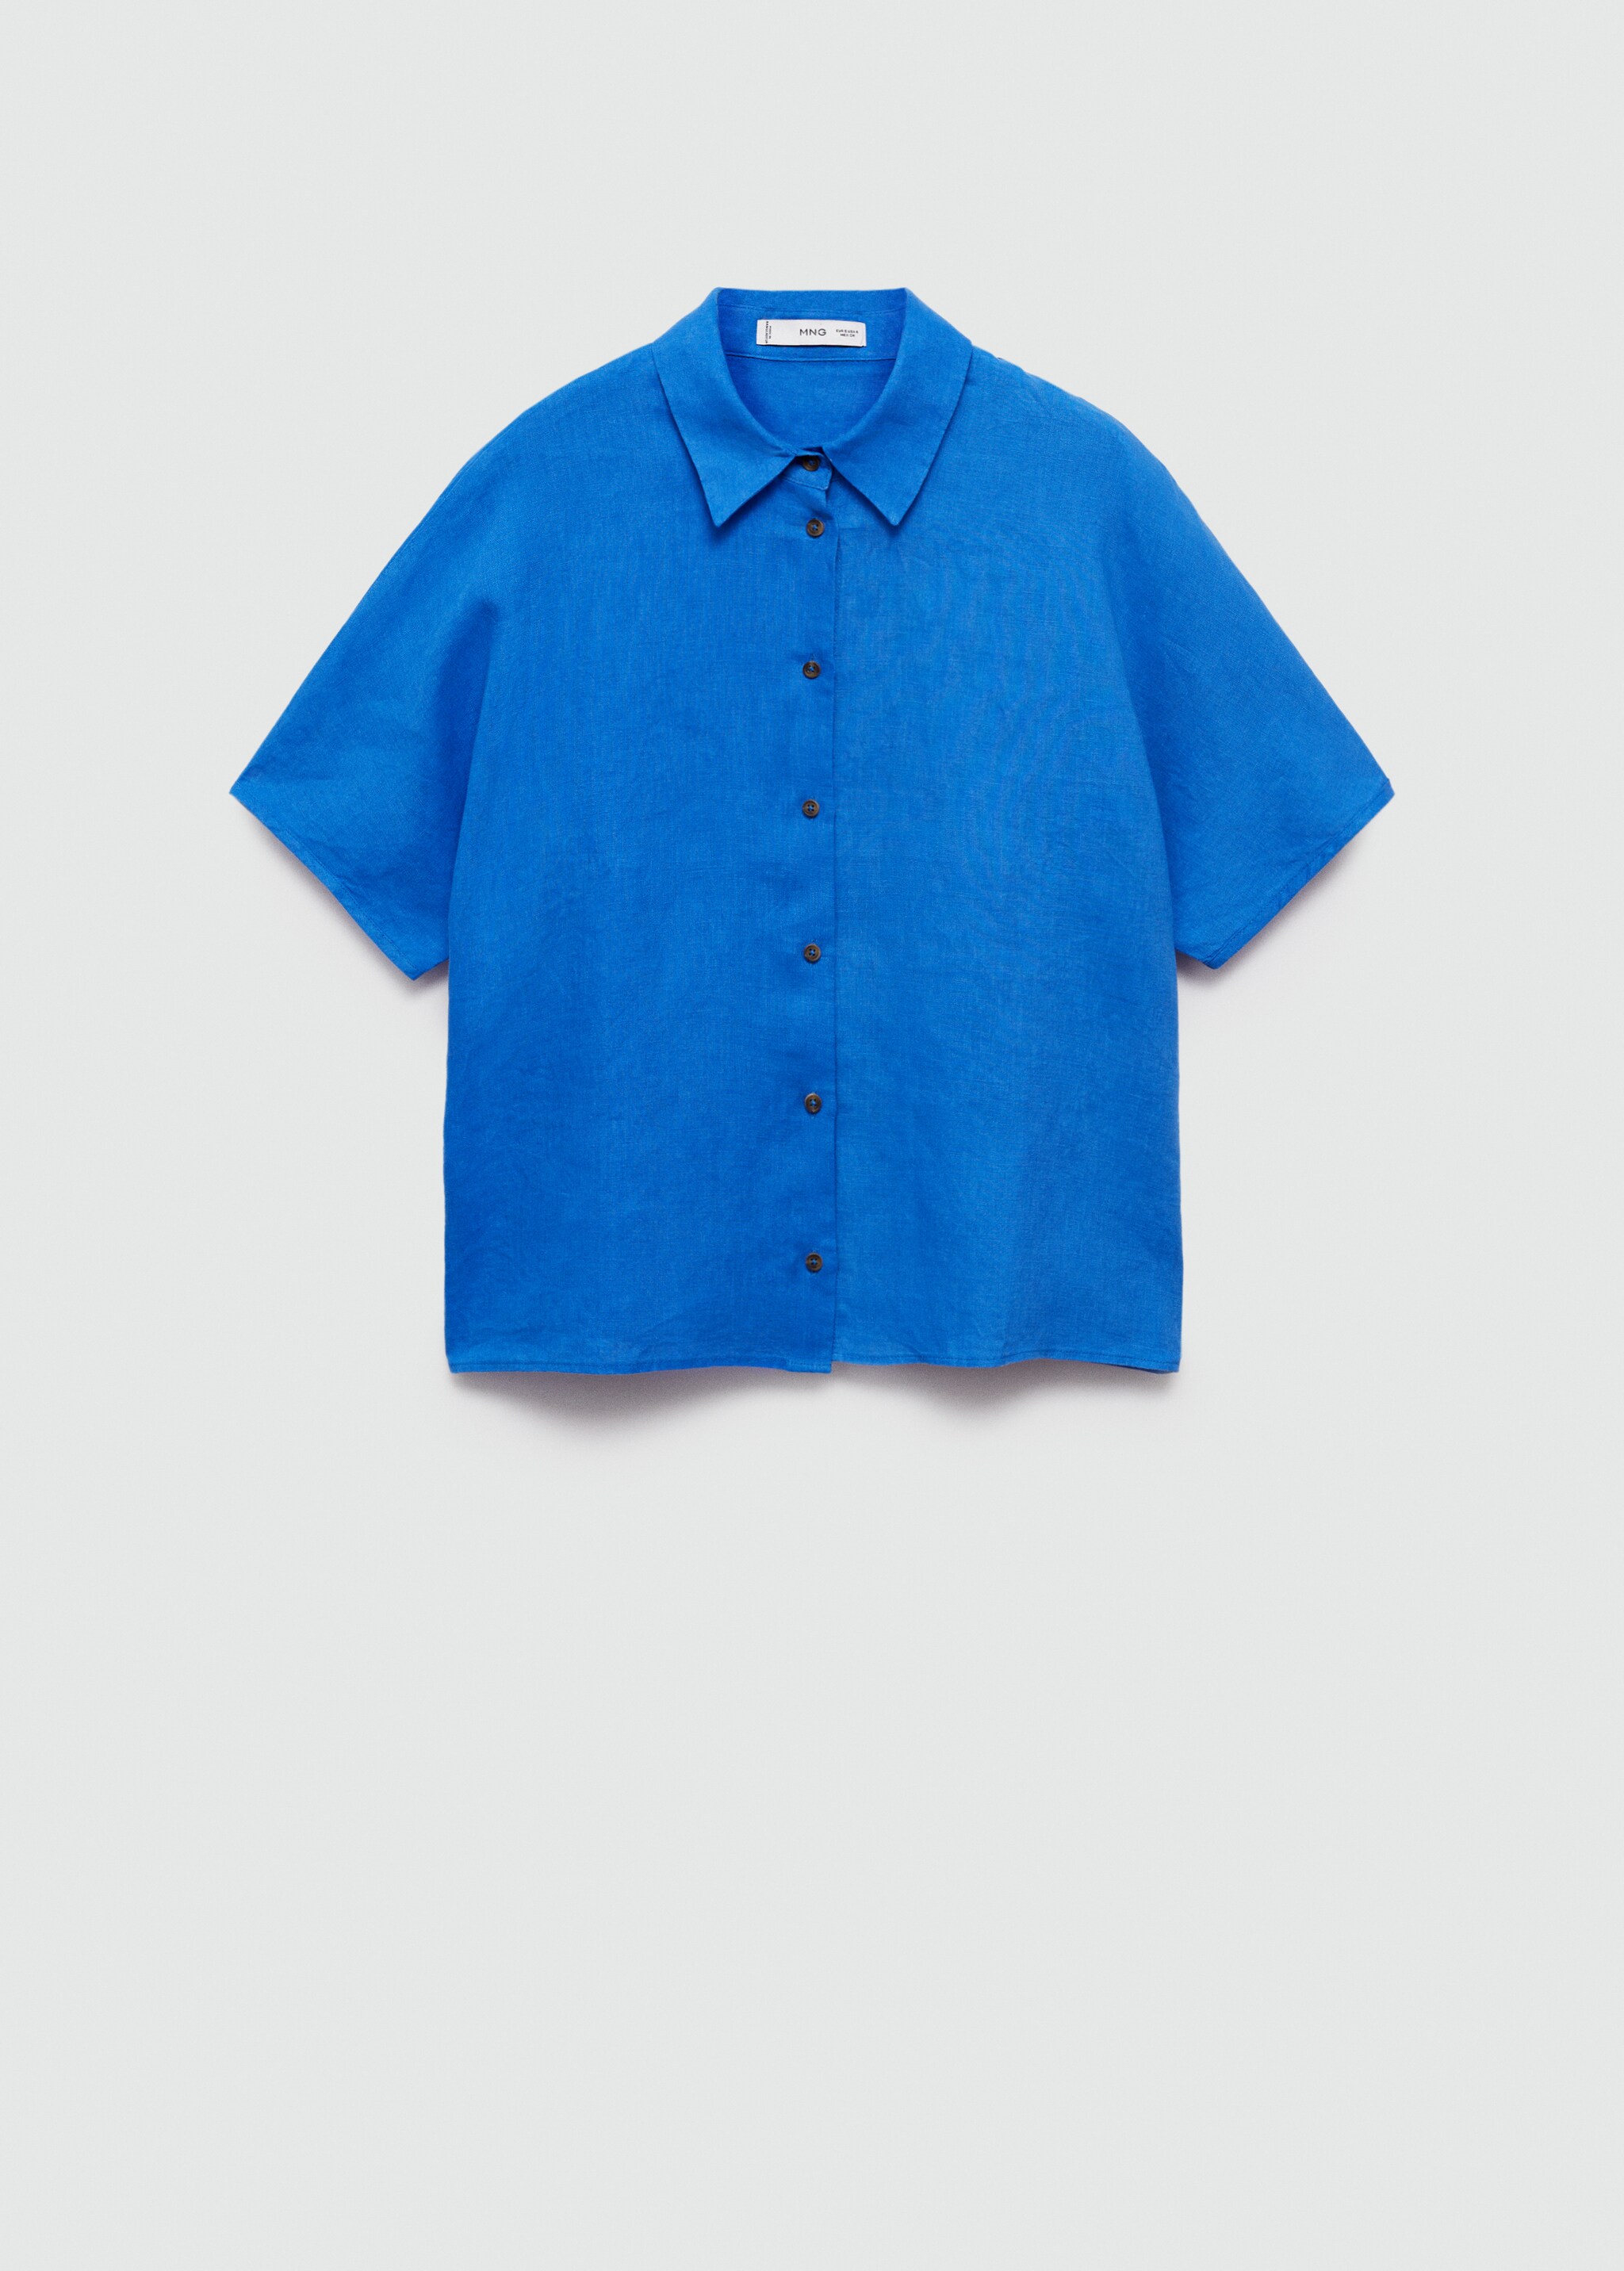 Camicia 100% lino - Articolo senza modello